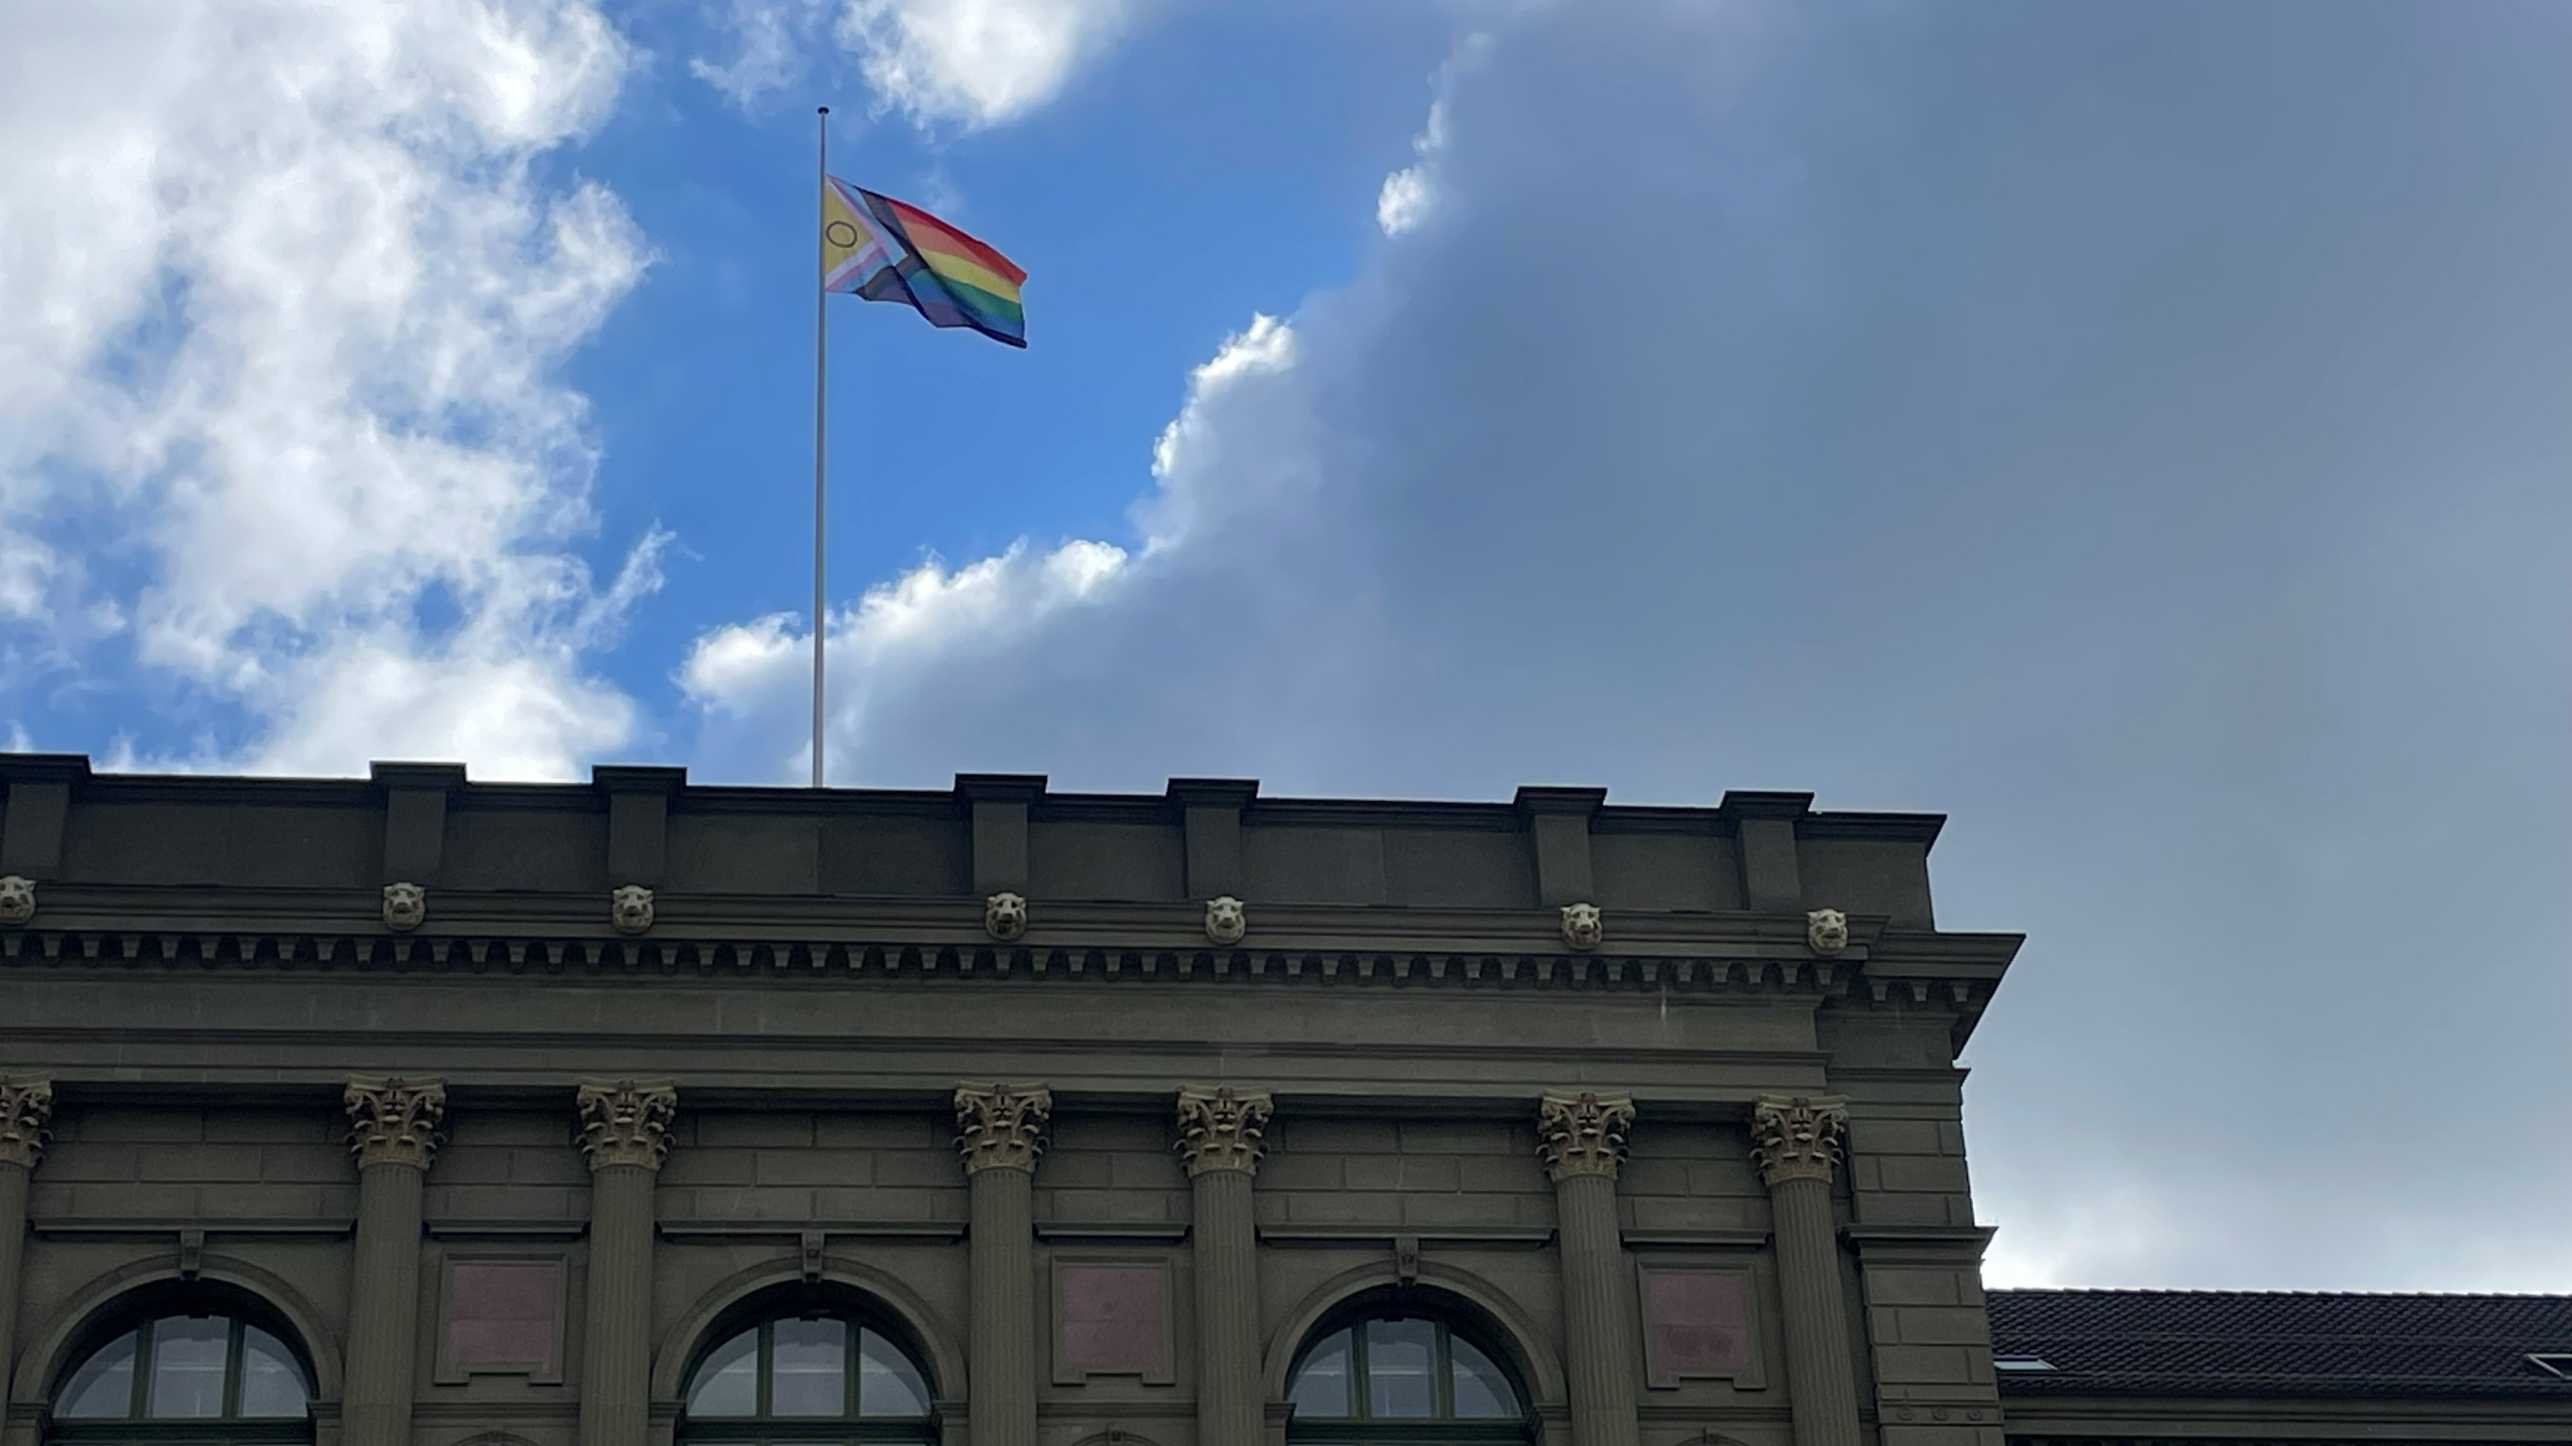 Progess-Pride-Fahne auf dem Hauptgebäude der ETH Zürich